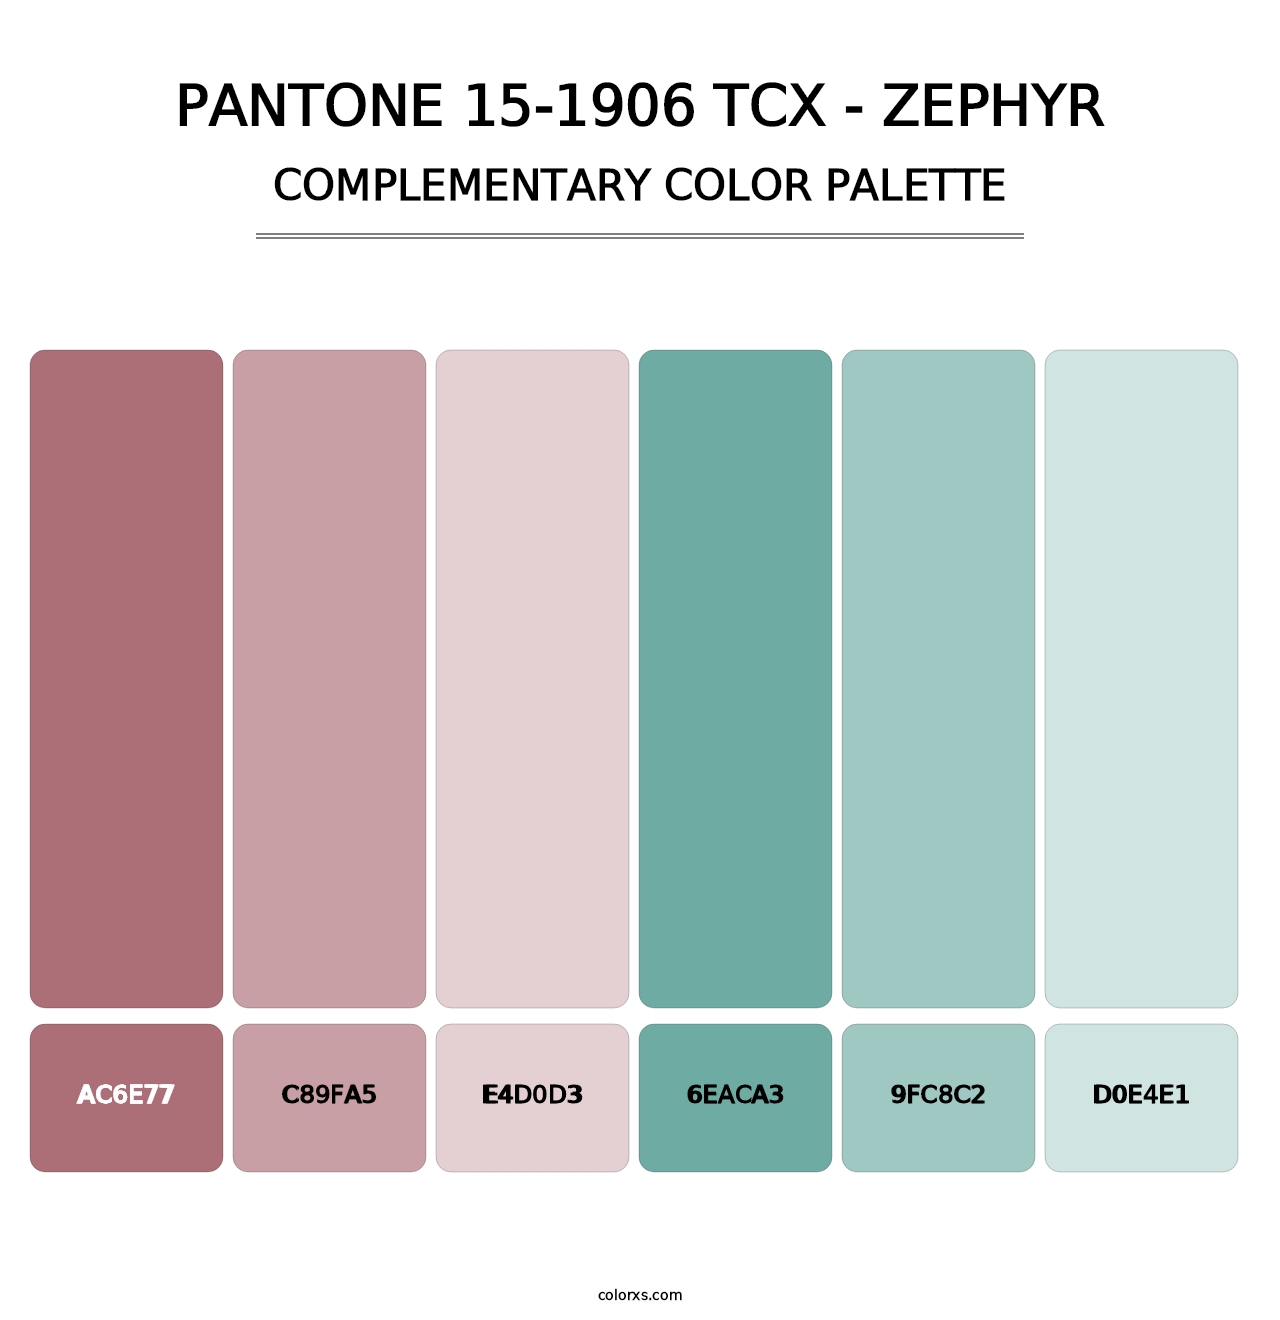 PANTONE 15-1906 TCX - Zephyr - Complementary Color Palette